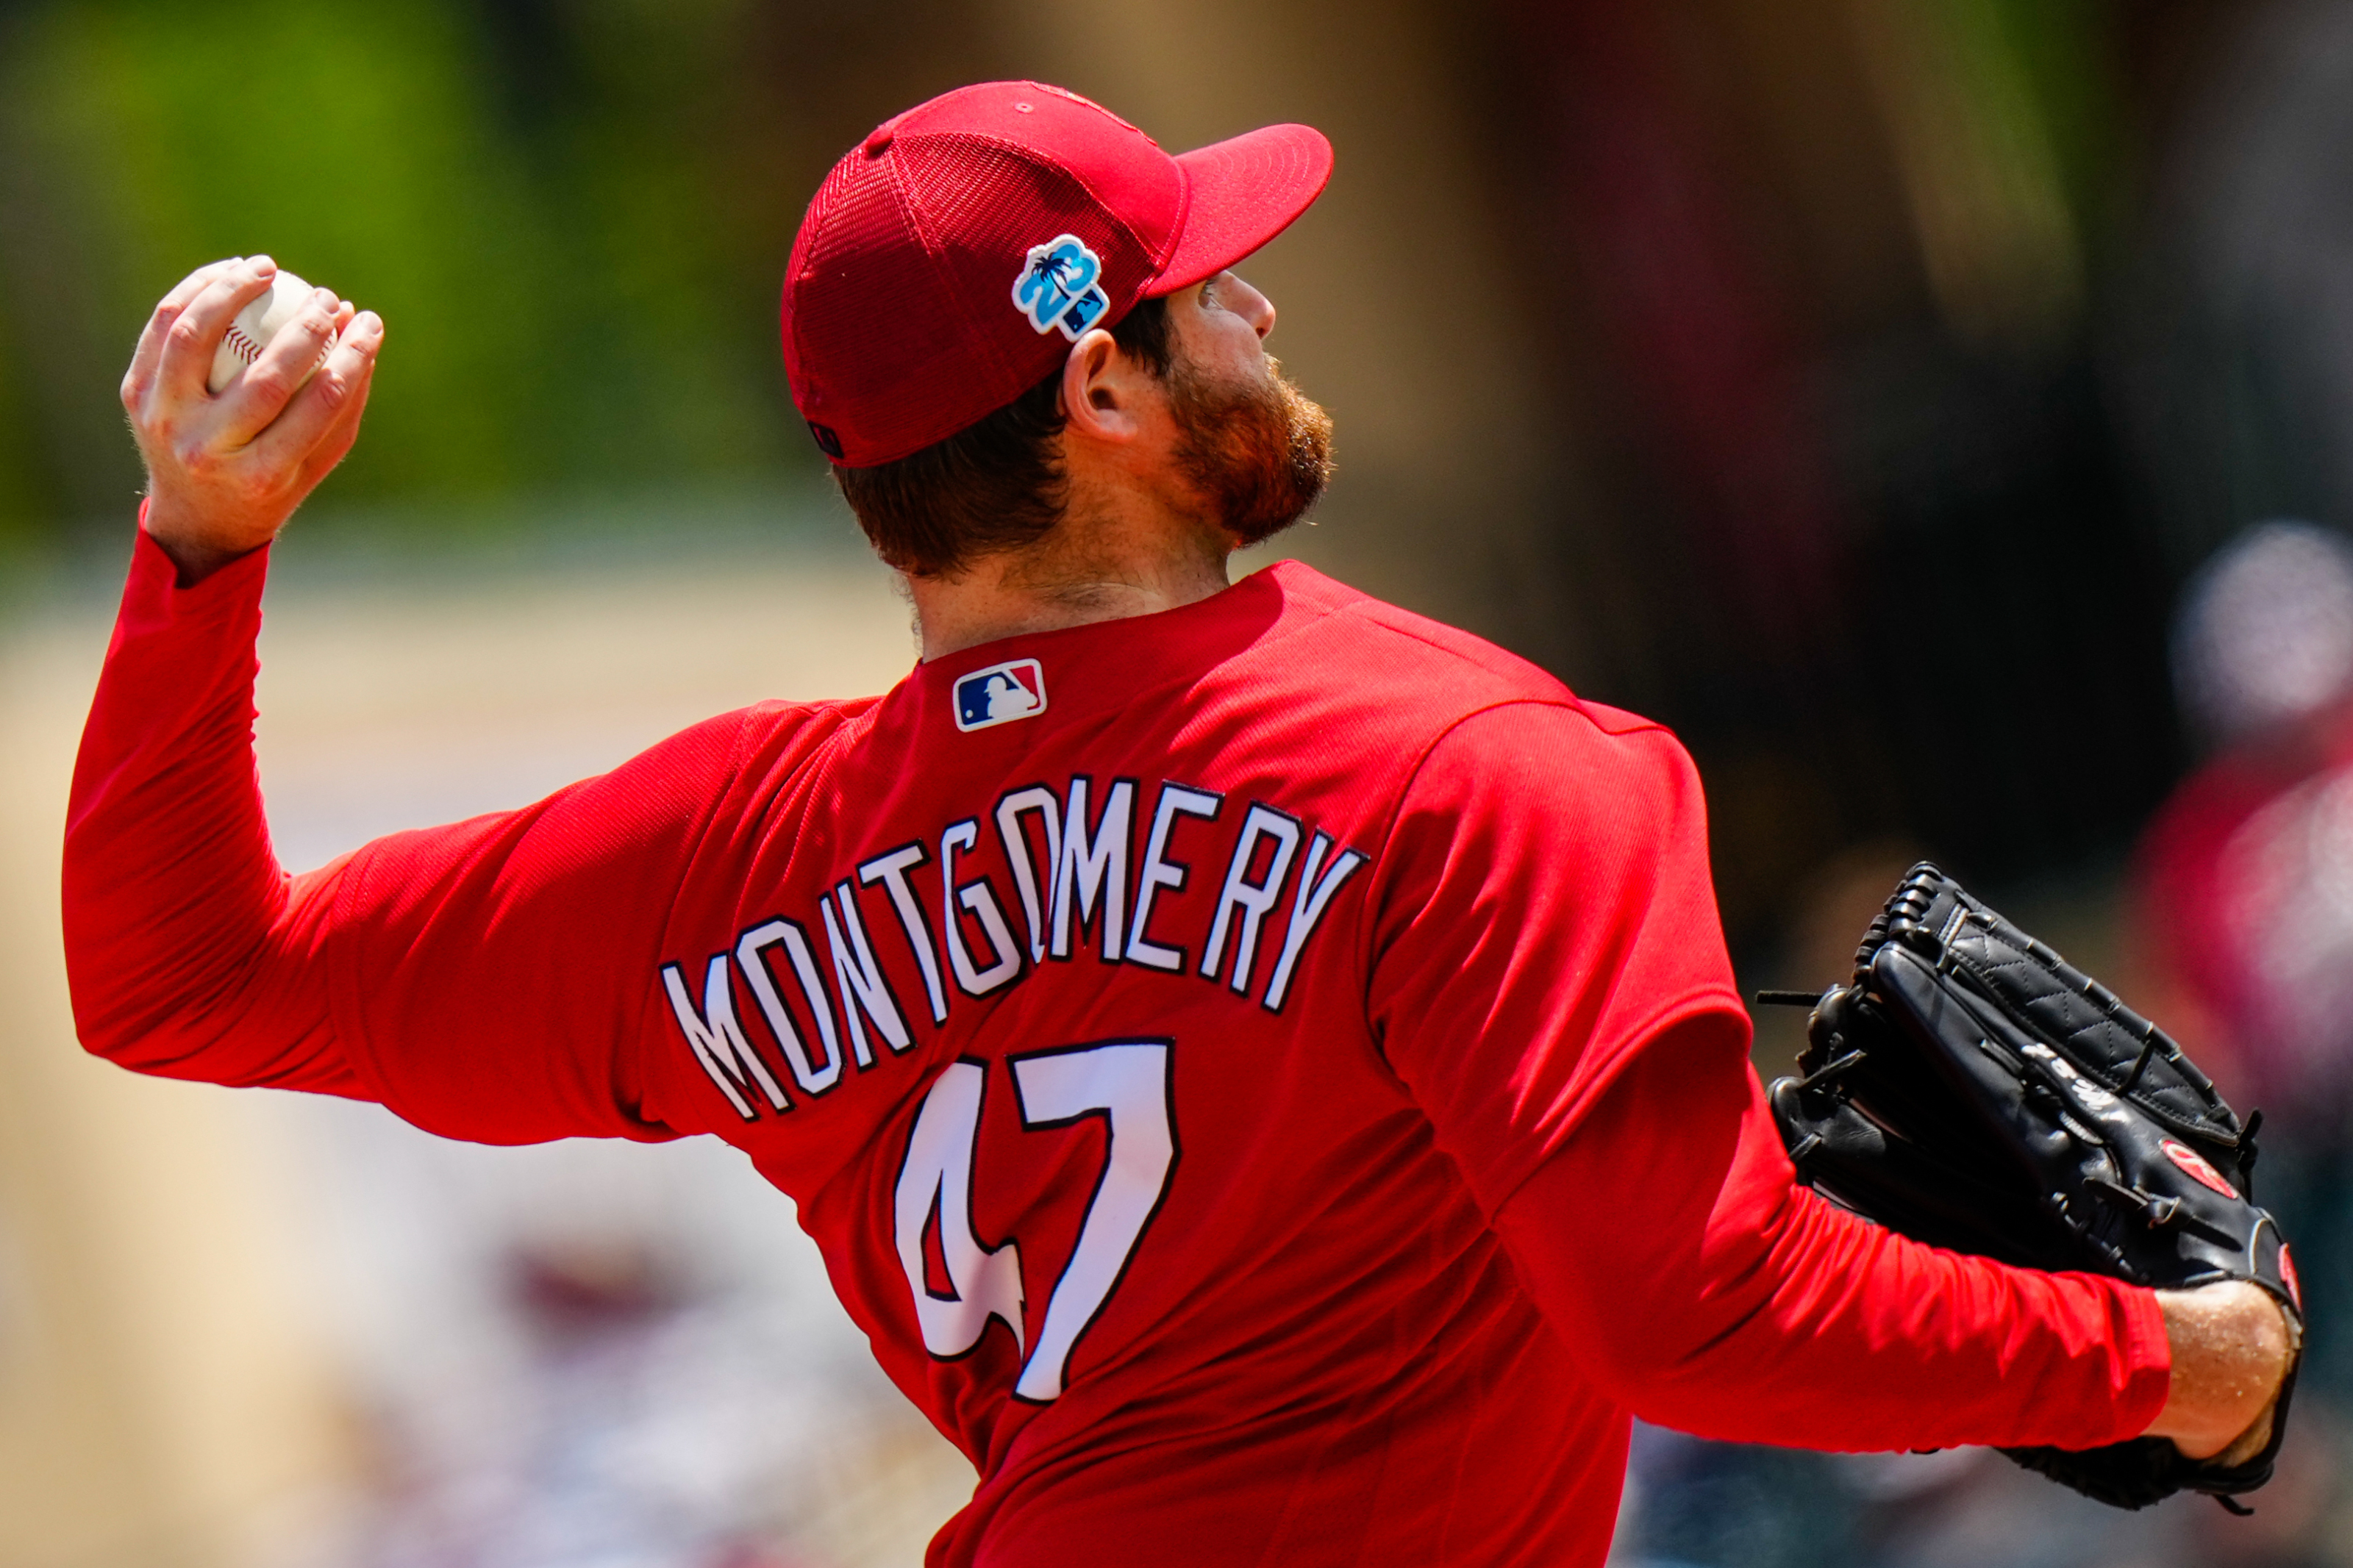 Jordan Montgomery - MLB News, Rumors, & Updates